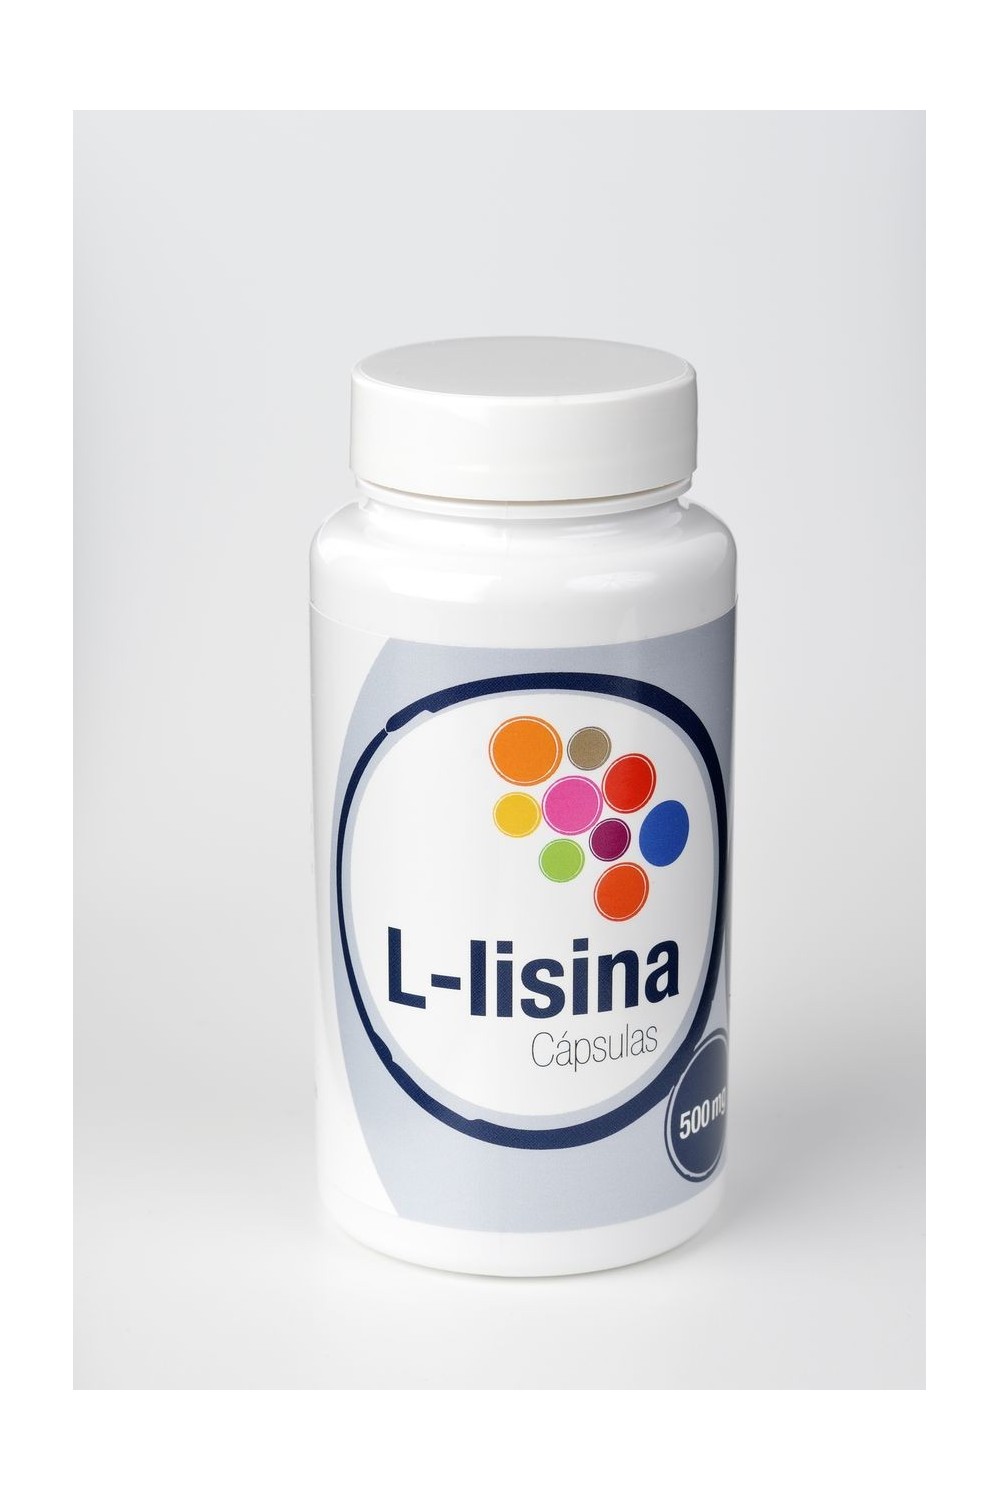 Artesania L - Lisina 60 Cáps